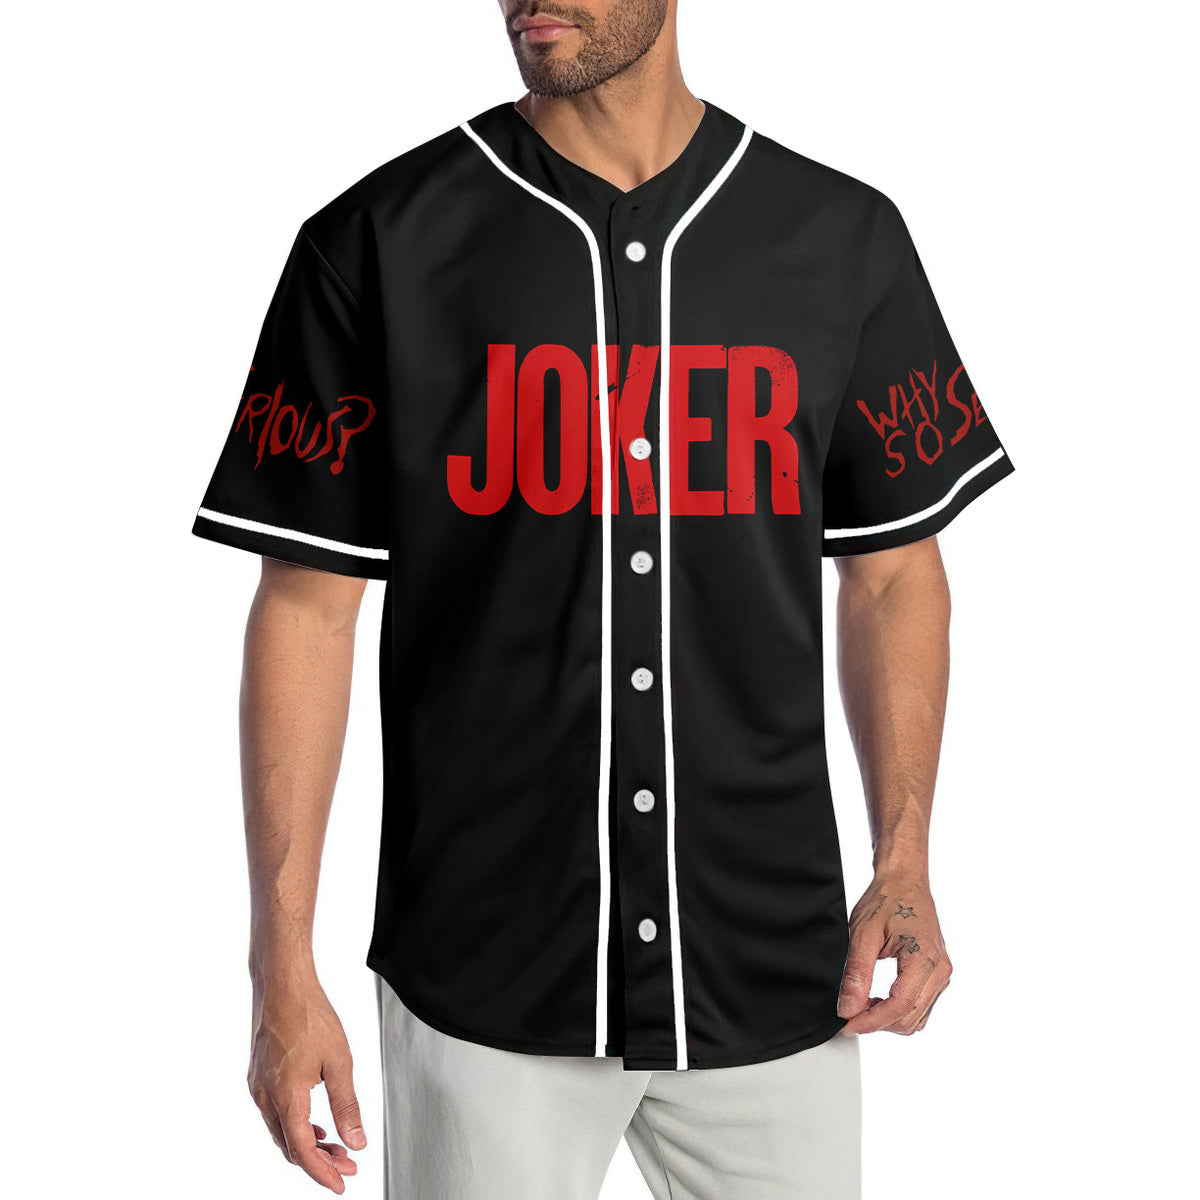 Joker HaHaHa Why So Serious Baseball Jersey